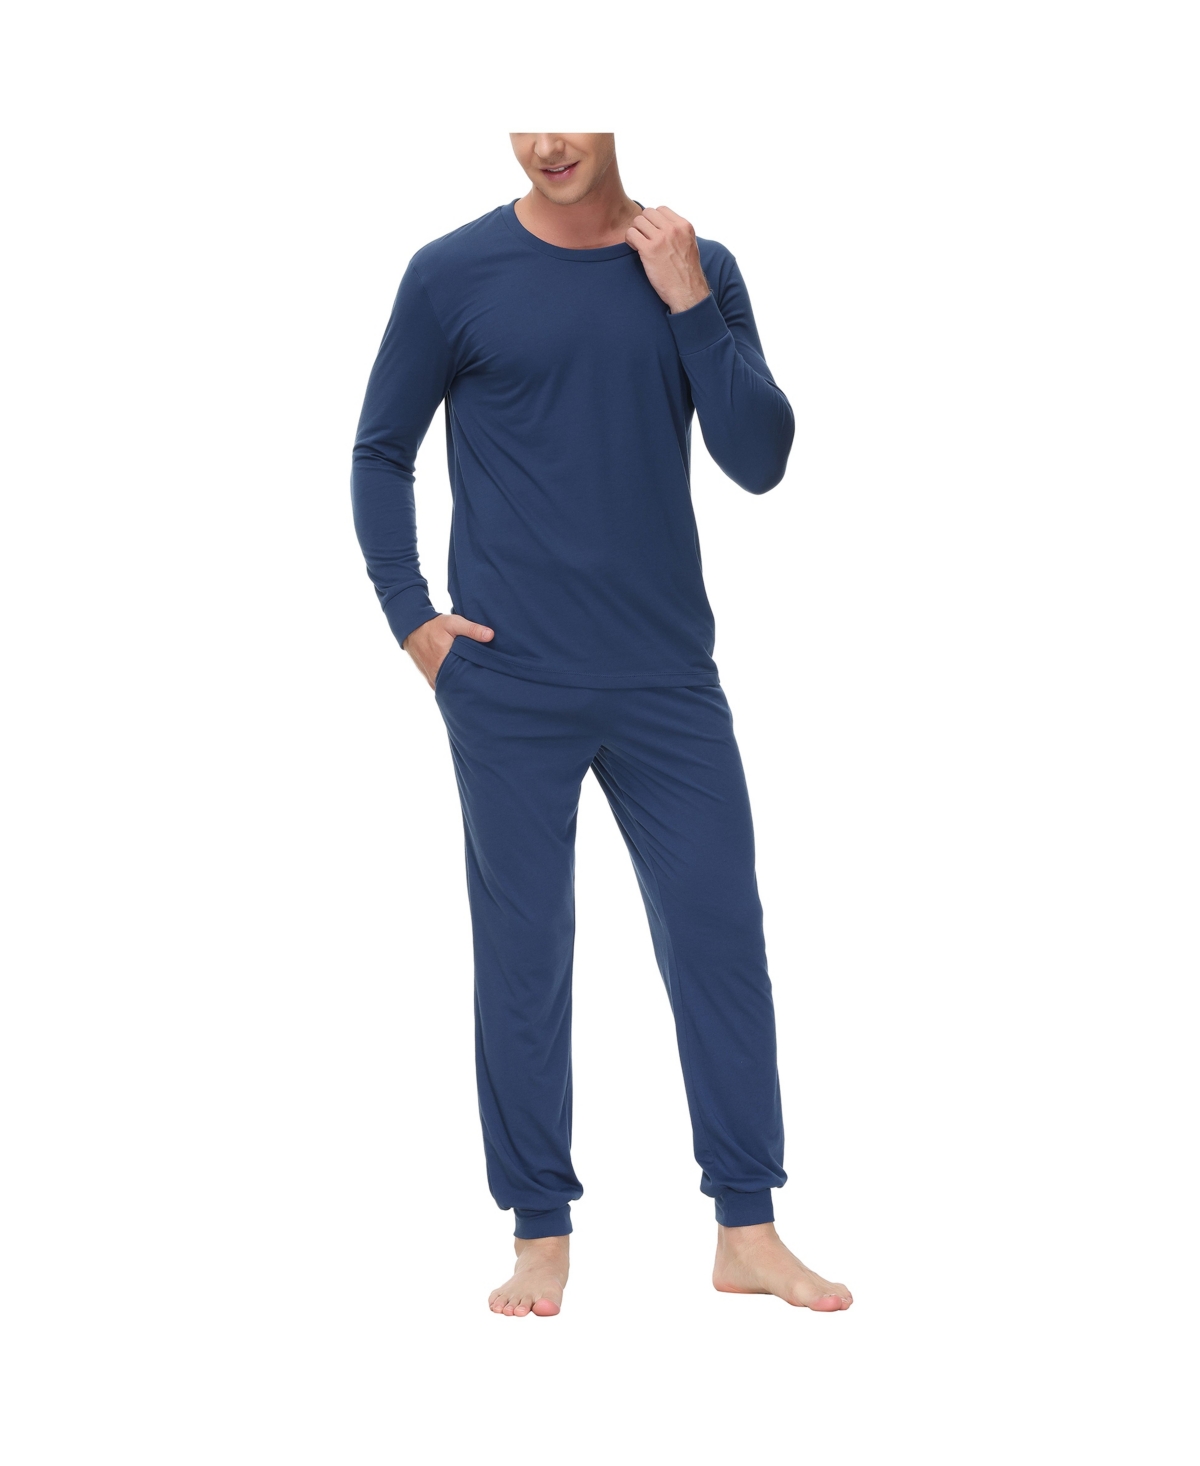 Men's Two-Piece Crewneck Shirt and Jogger Pajama Set - Red